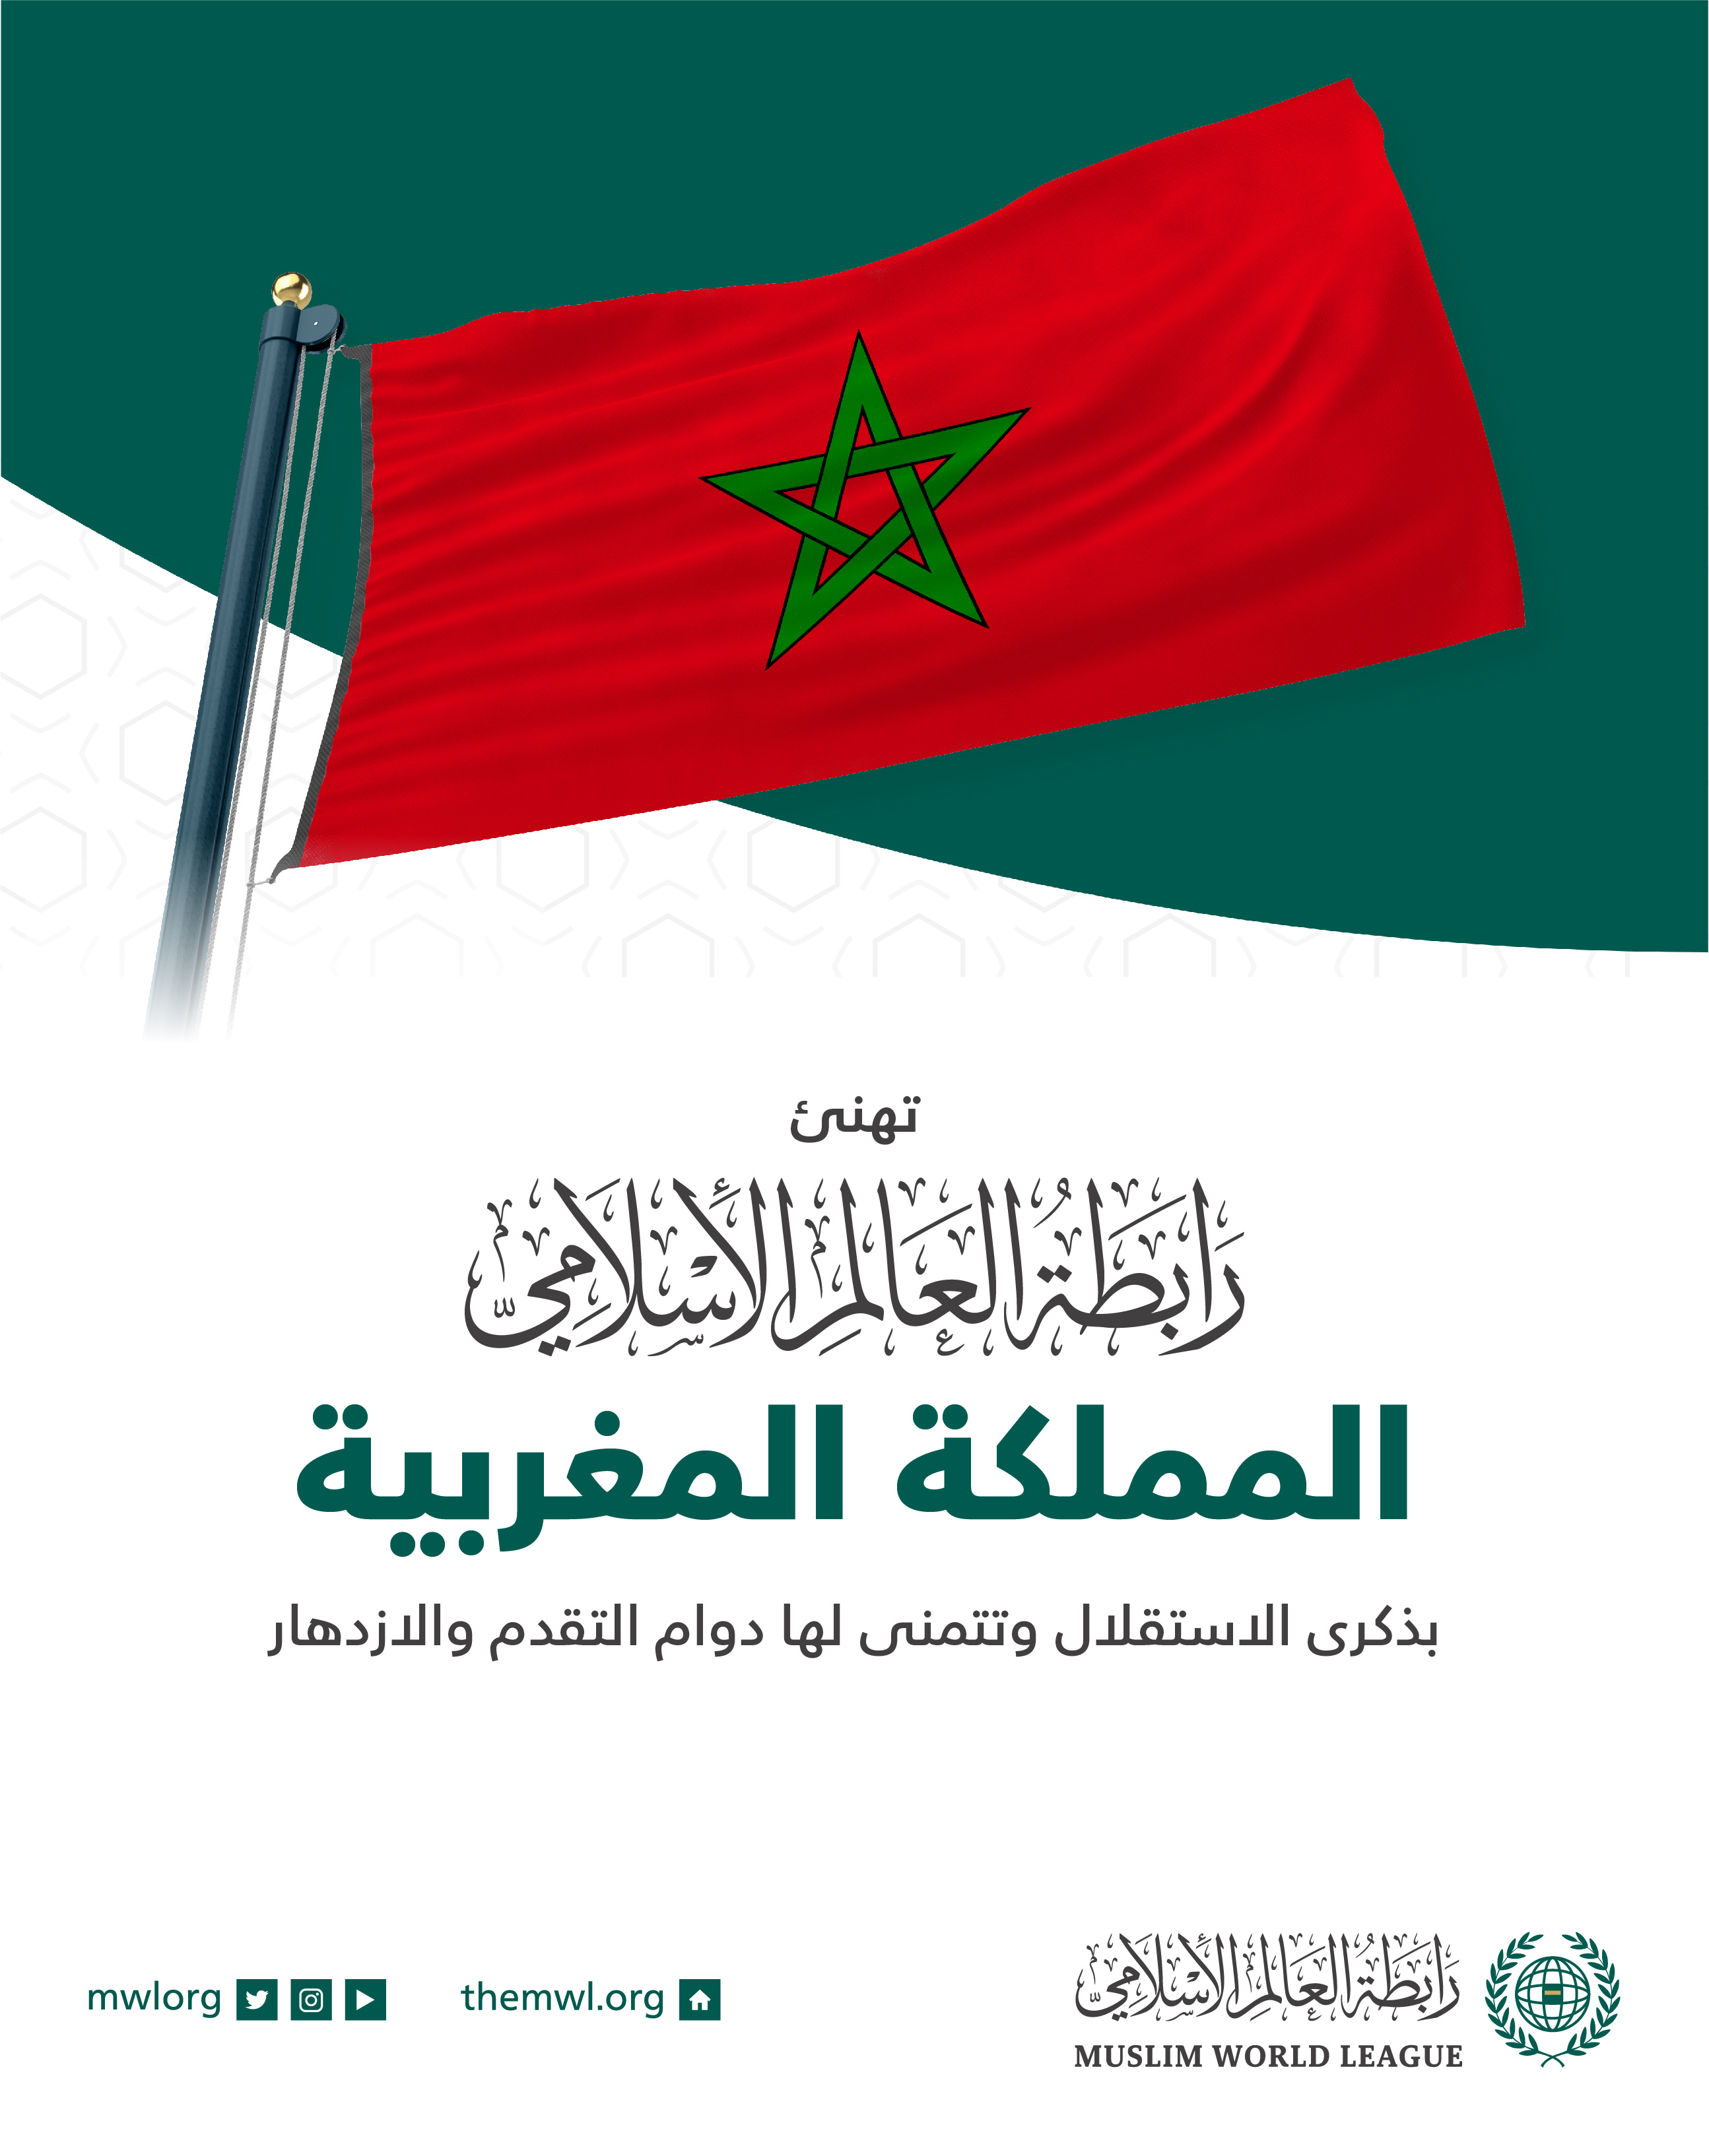 تهنئ رابطة العالم الإسلامي المملكة المغربية بذكرى الاستقلال :